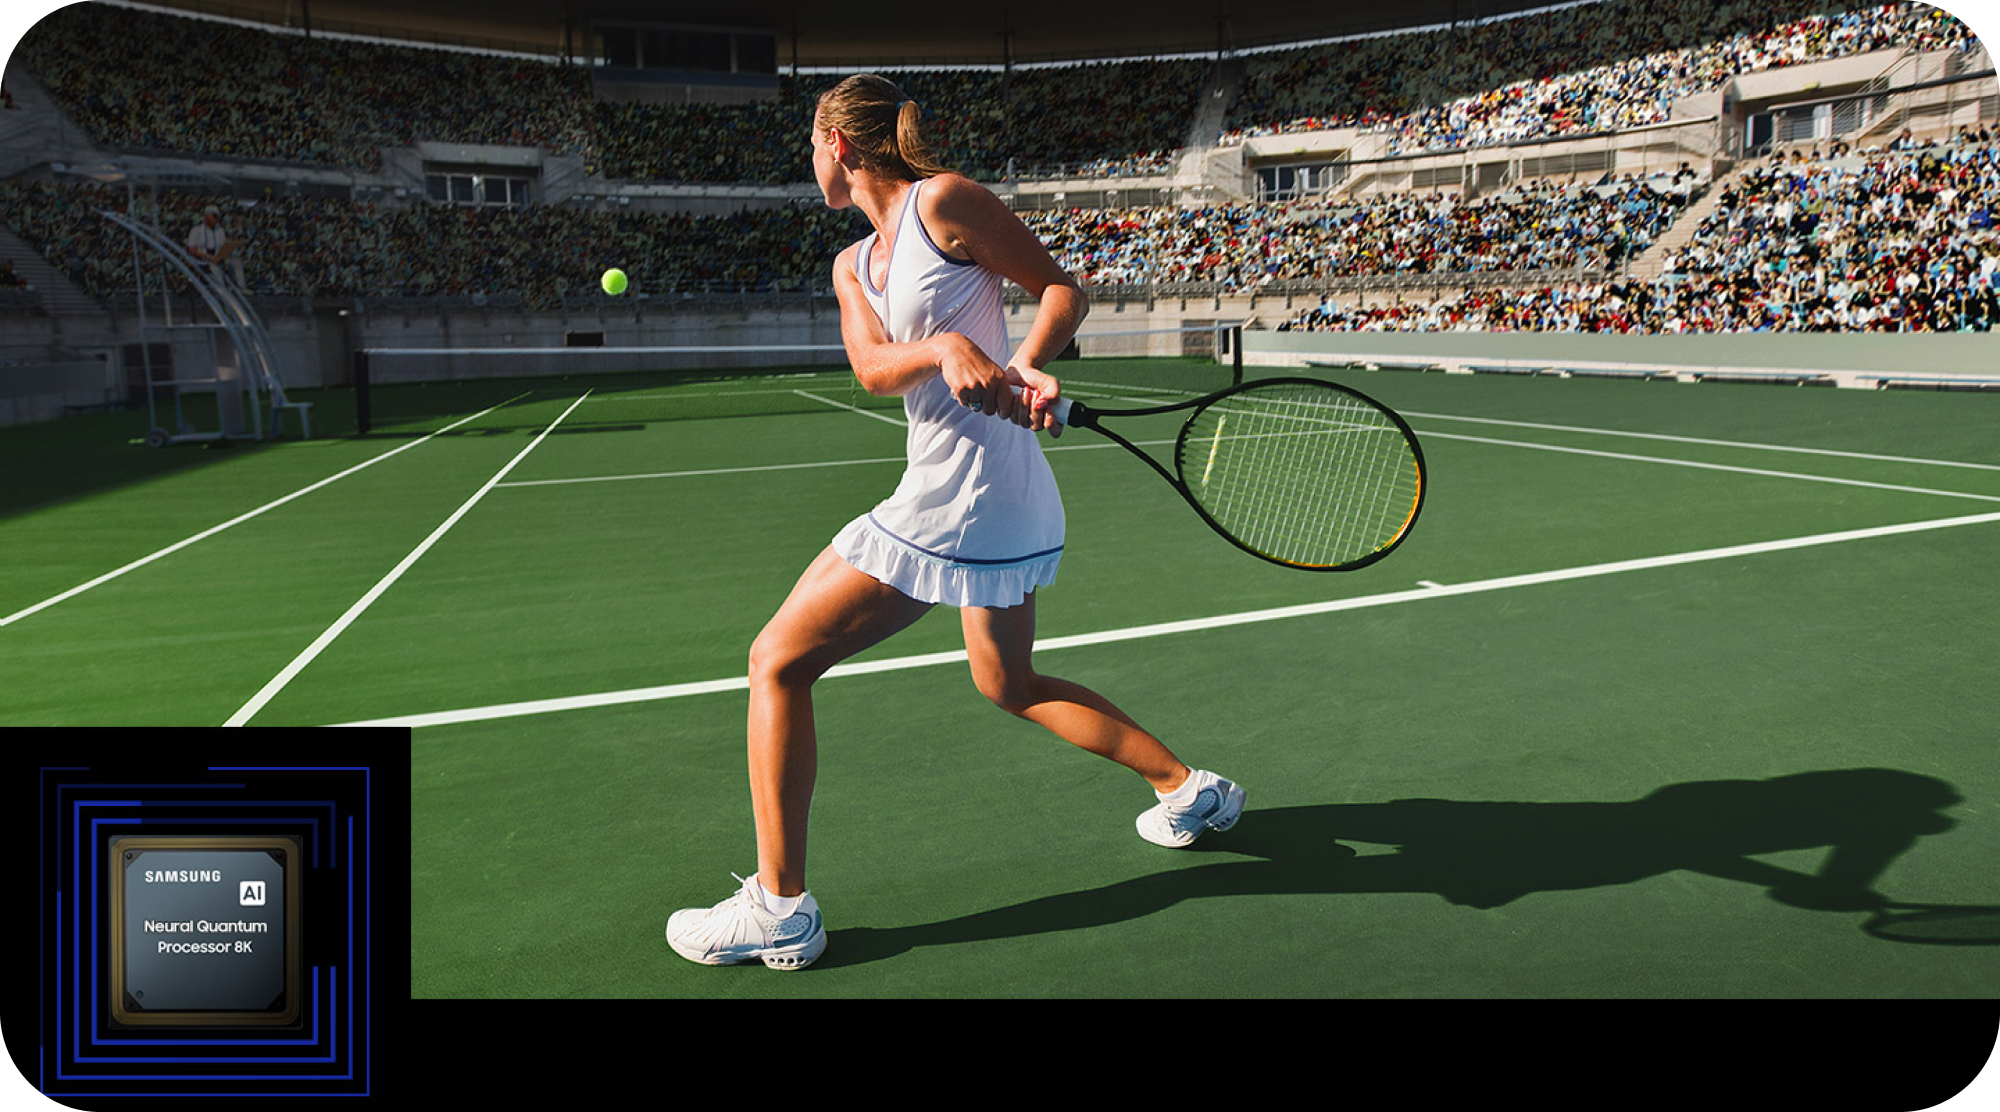 Samsung TV med Neural Quantum Processor 8K och en tjej som spelar tennis